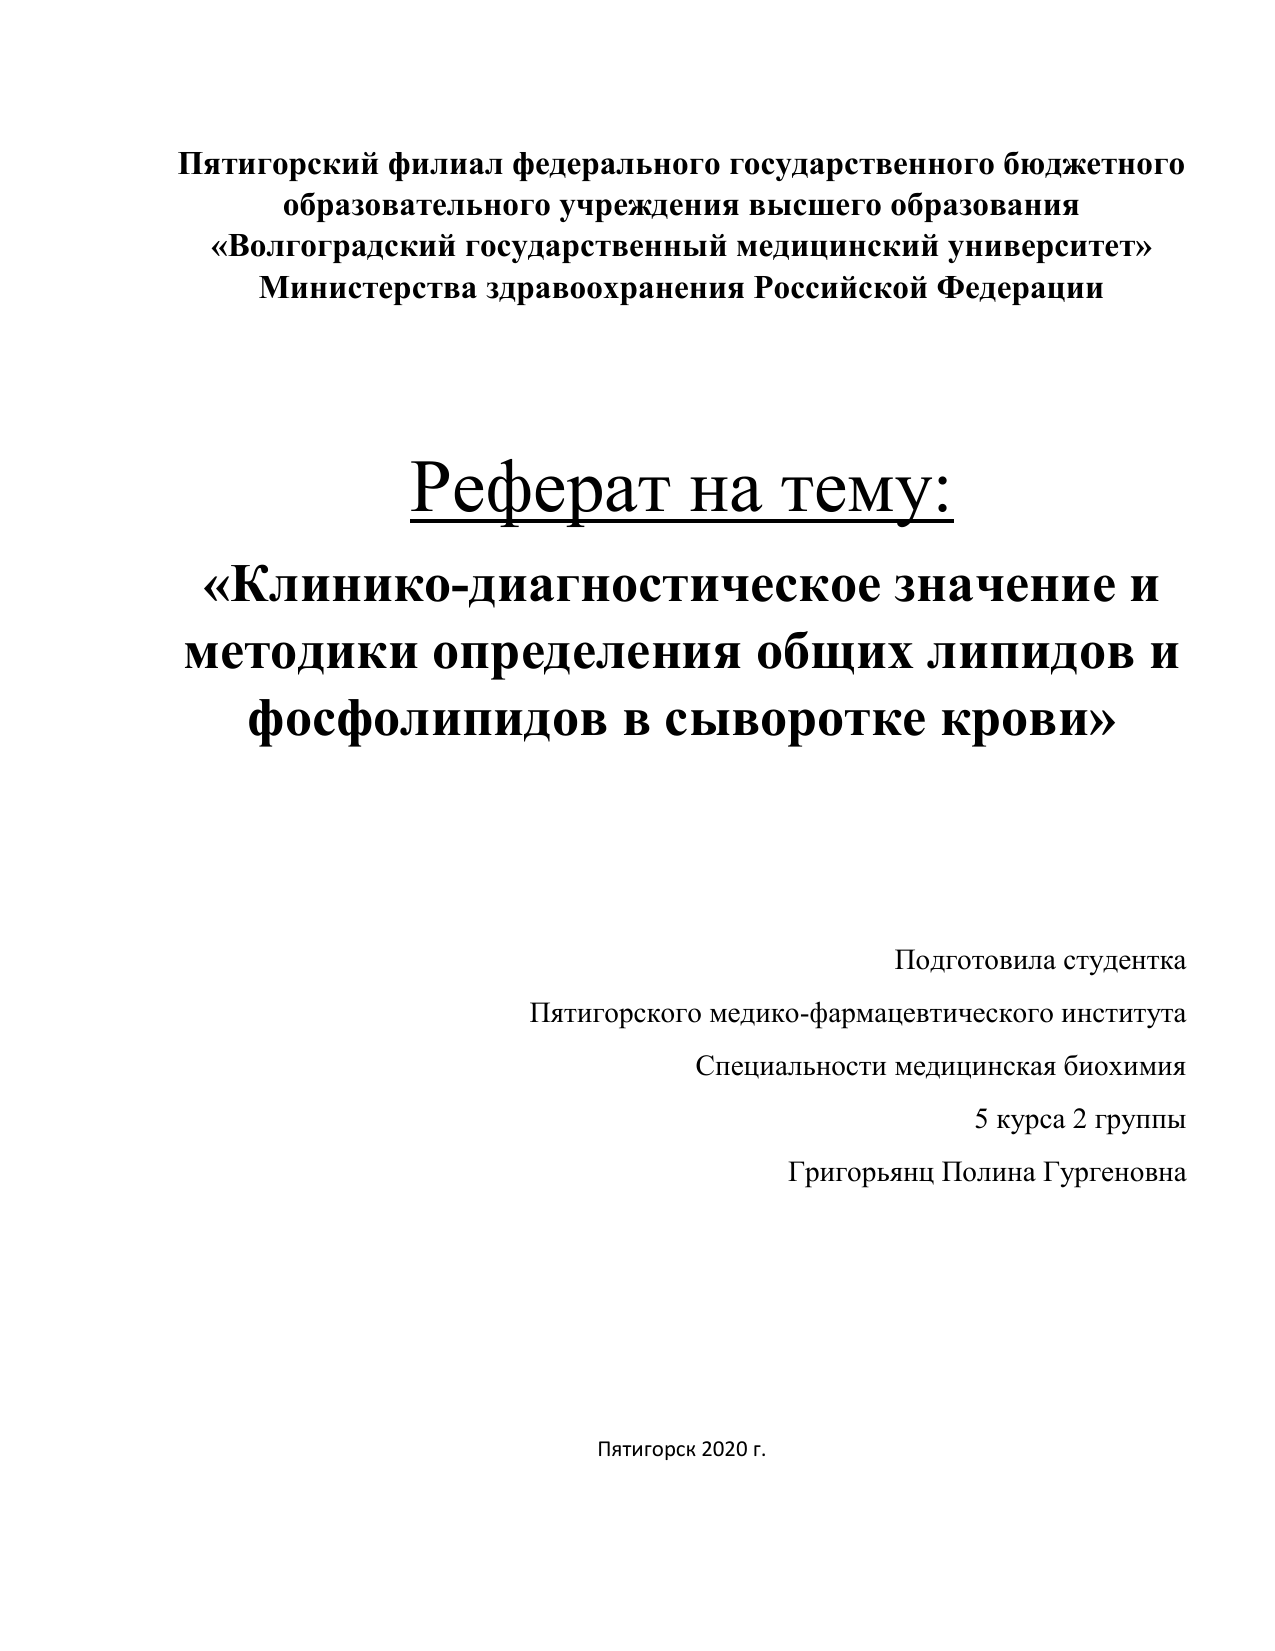 Курсовая работа по теме Изучение состояние здравоохранения в Российской Федерации